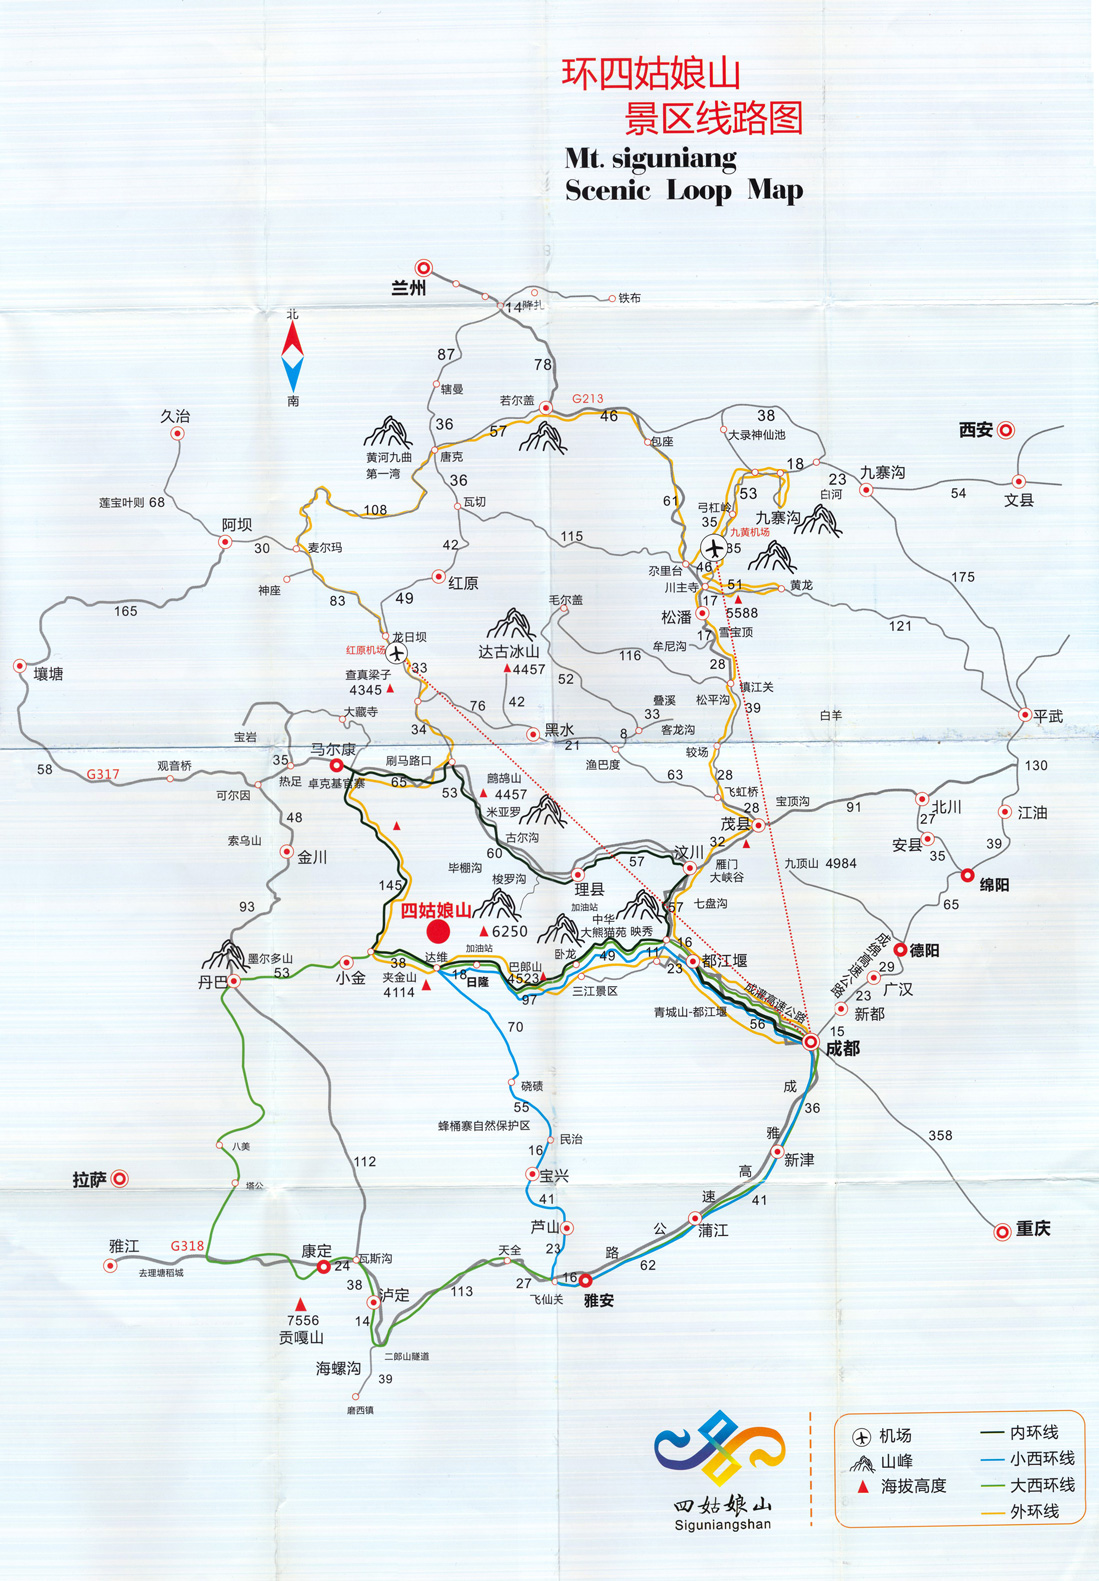 Siguniangshan-map-a-1099p-.jpg